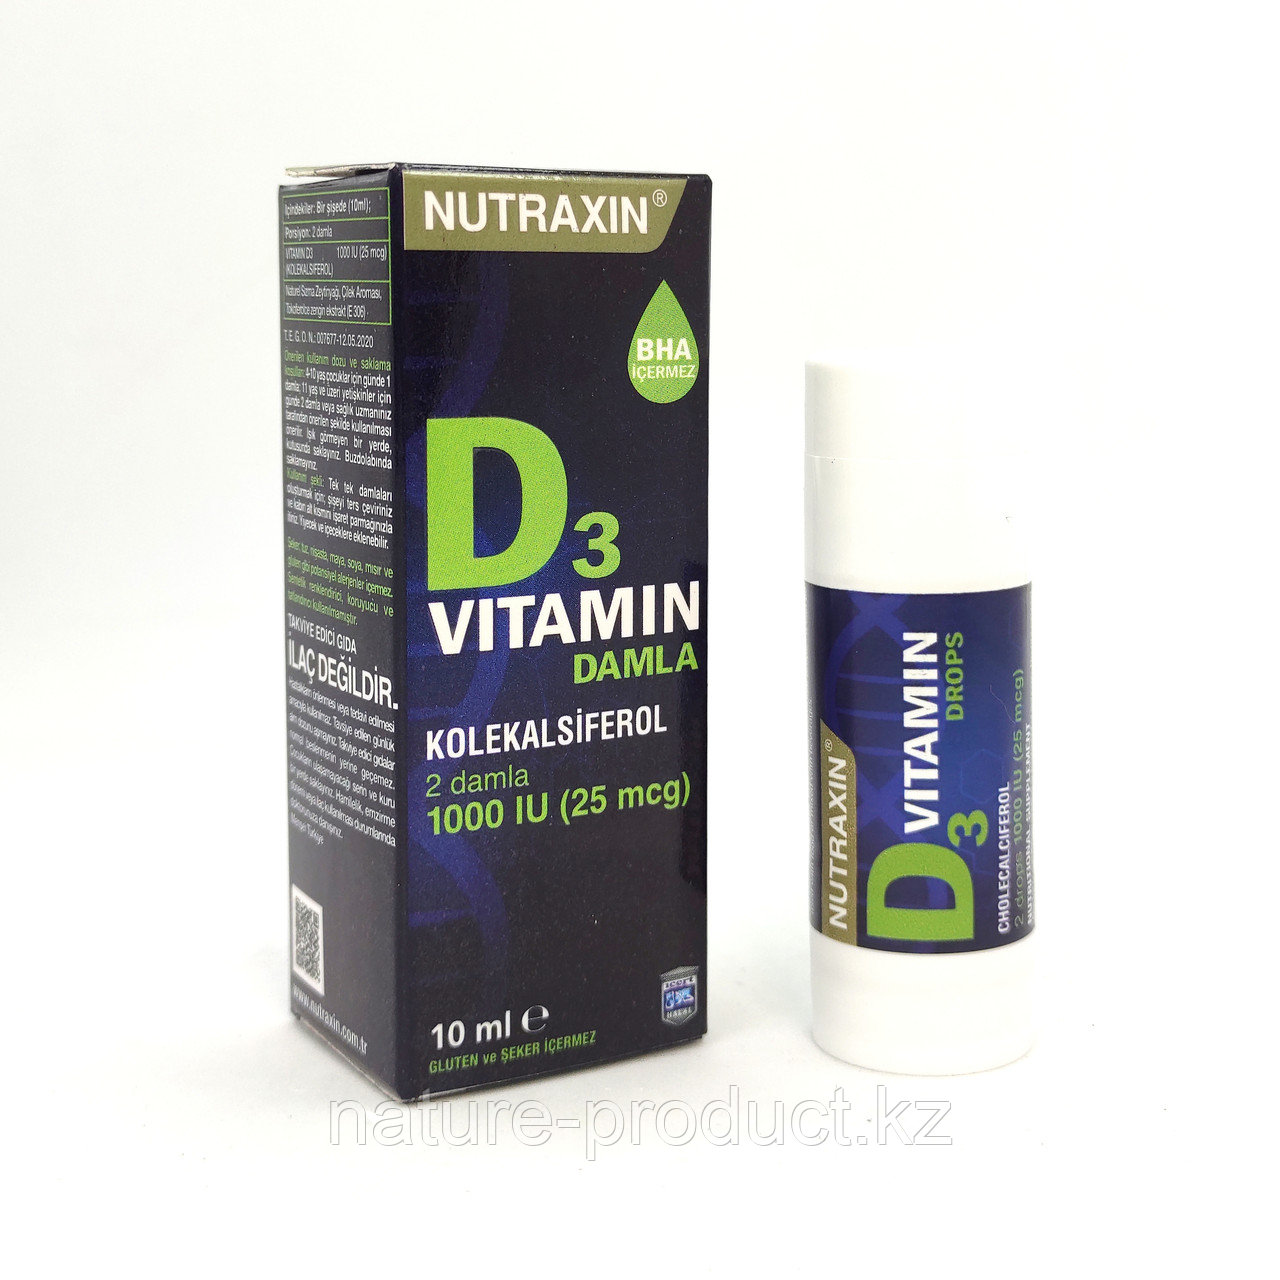 Капли Витамин Д3 1000 IU (25 mcg) Nutraxin 10 ml